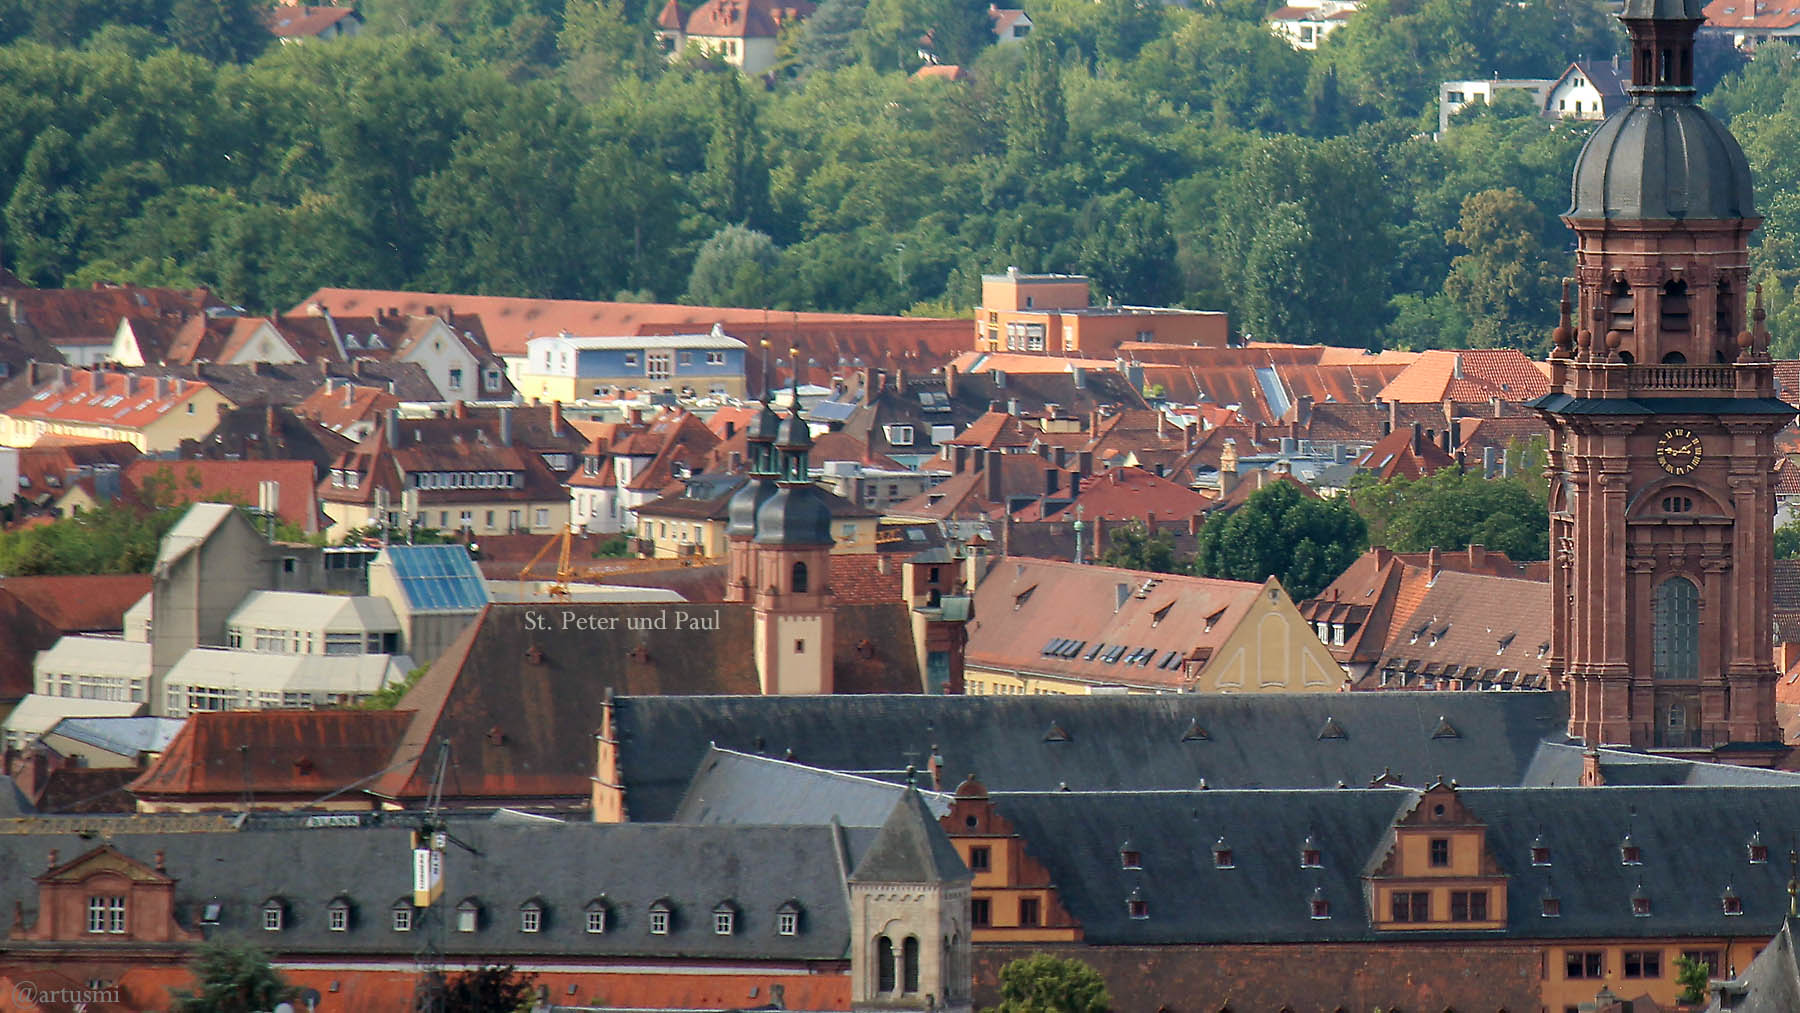 St. Peter und Paul in Würzburg